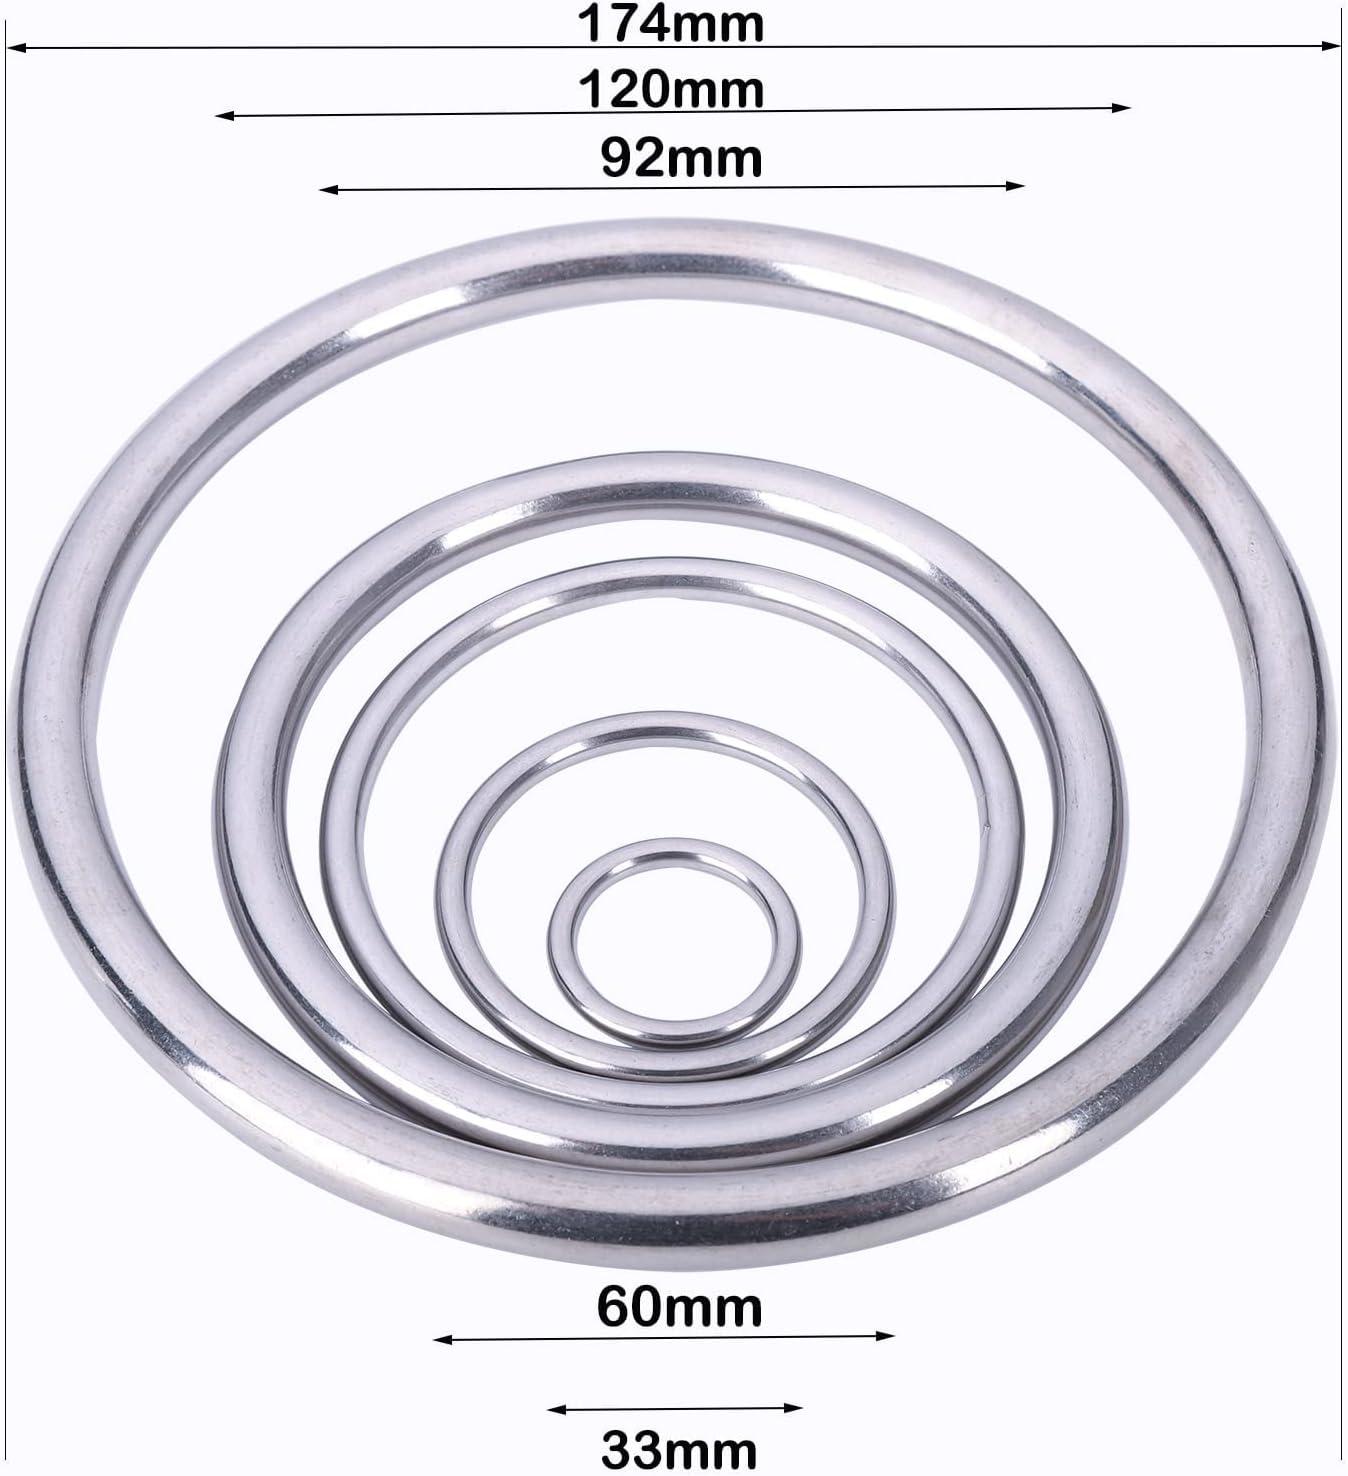 1 Inch Metal O-Ring